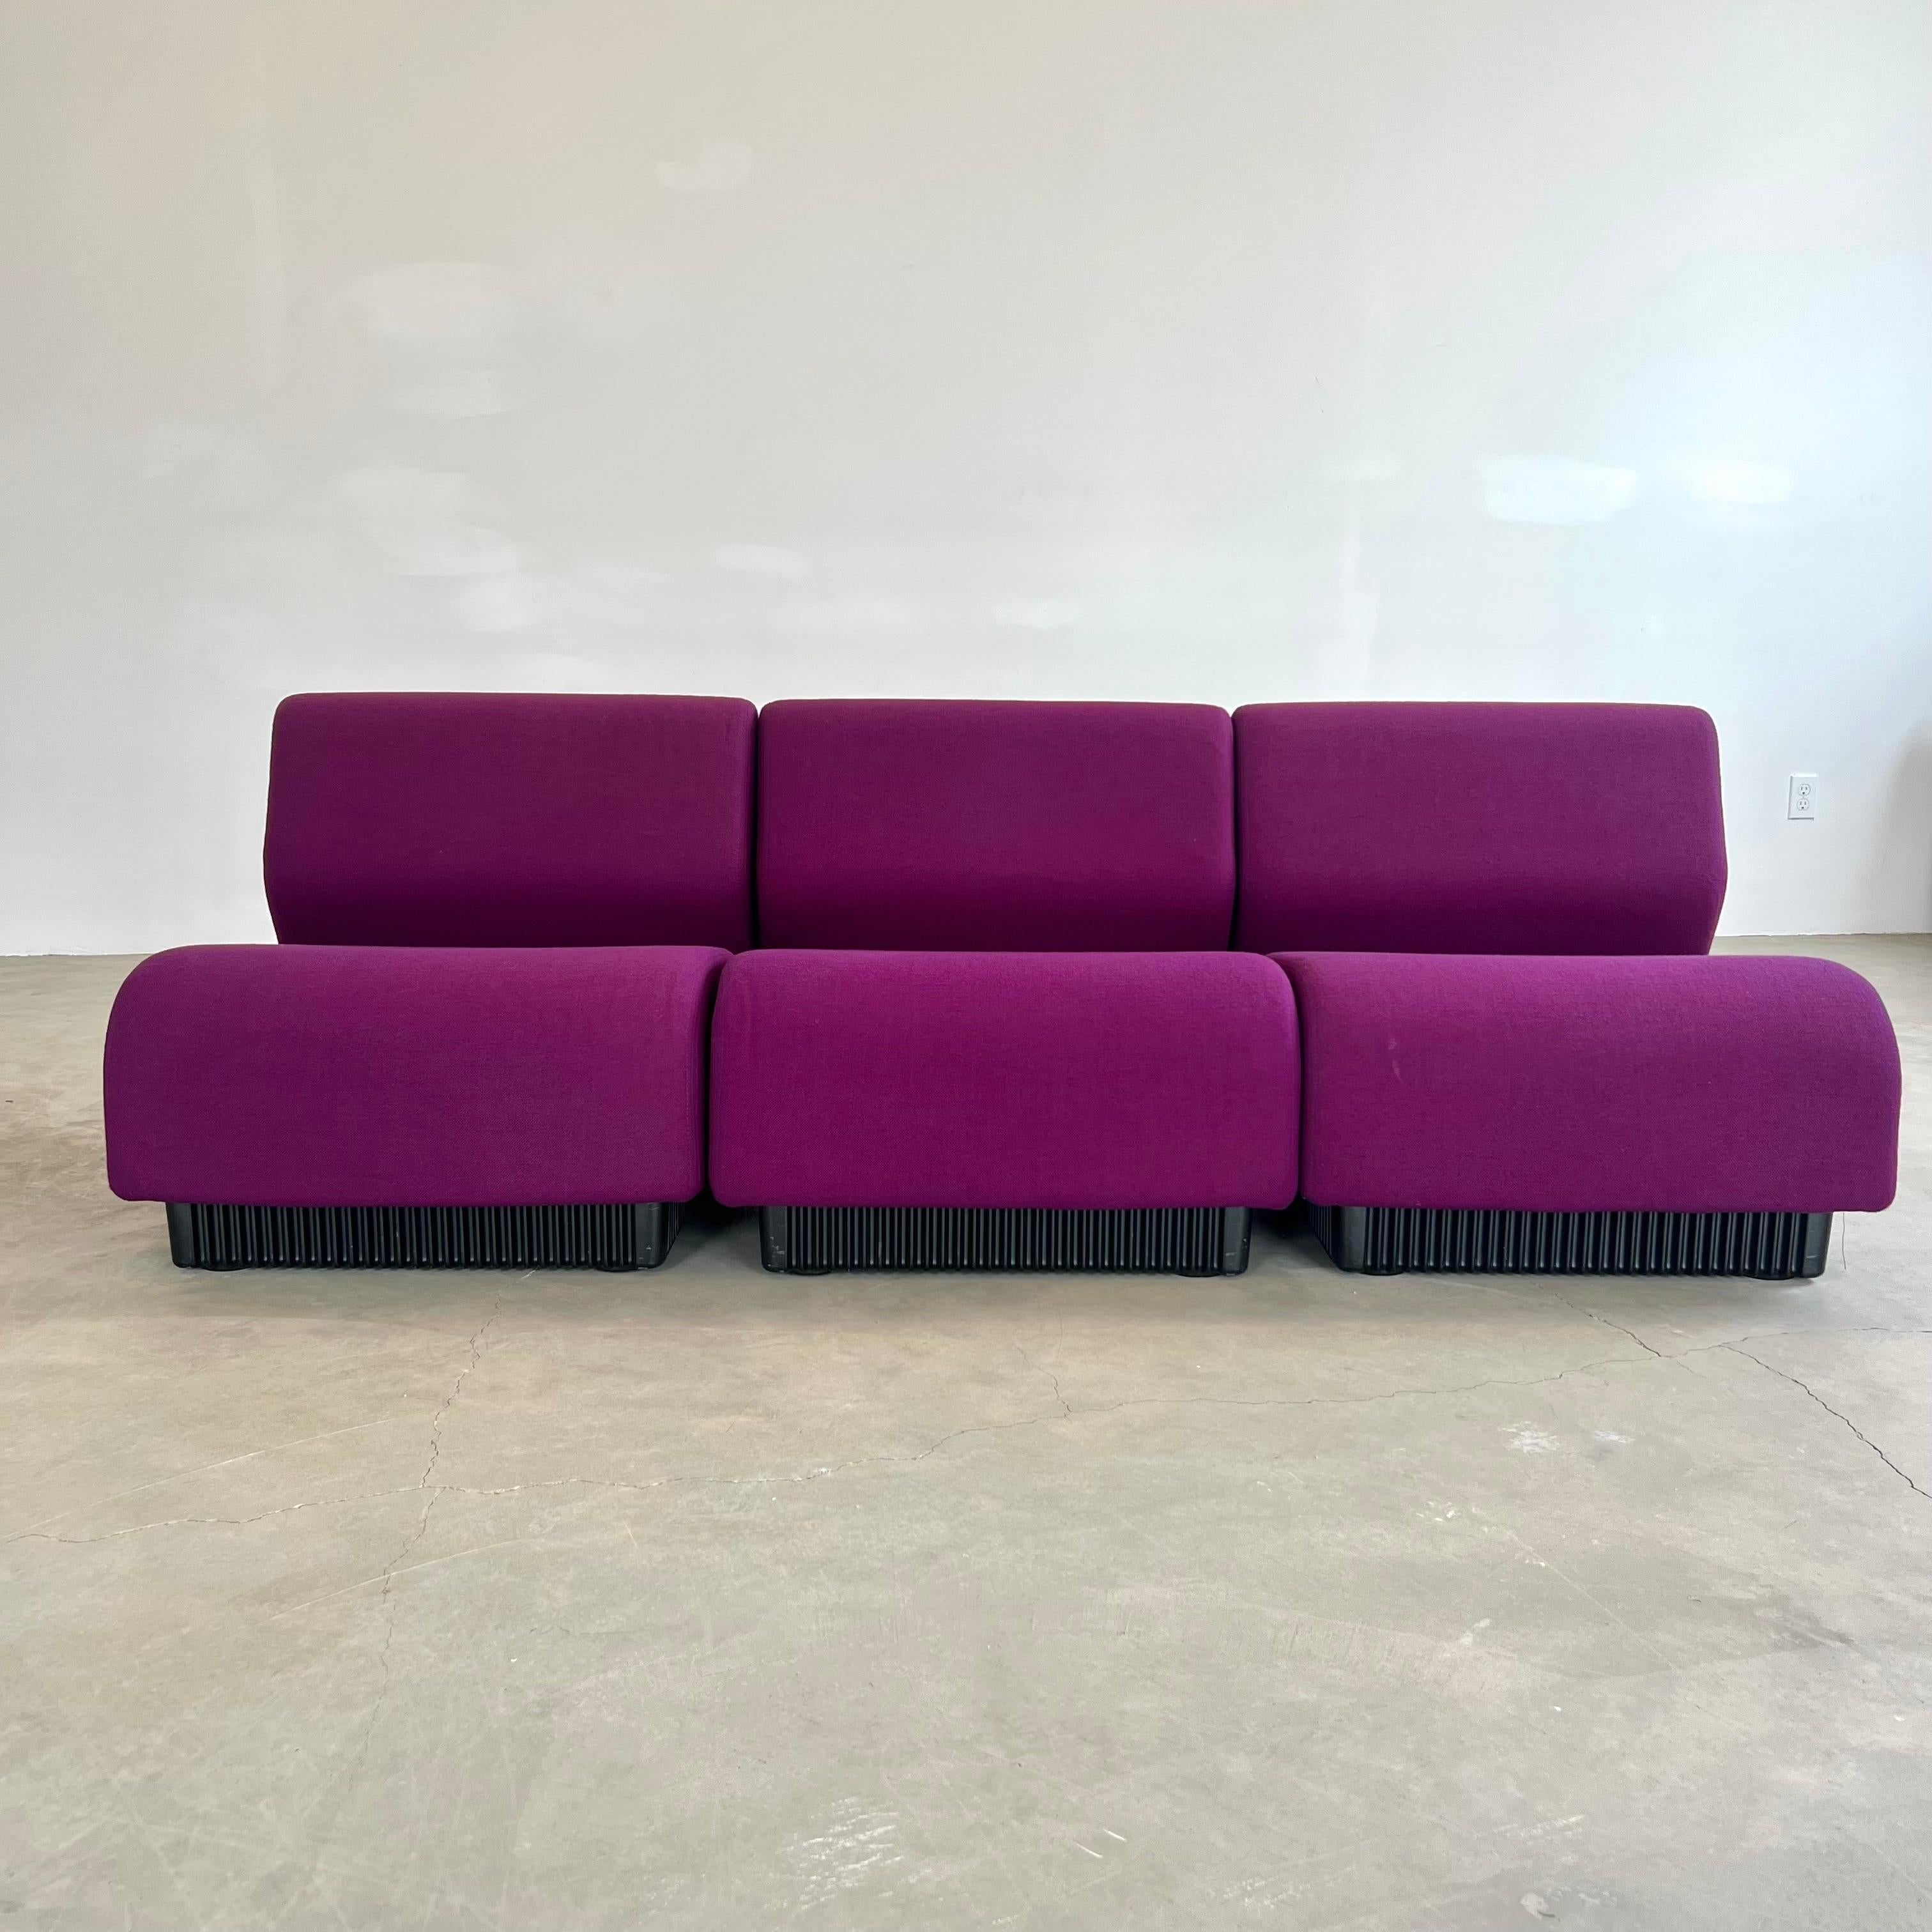 Atemberaubendes 3-teiliges modulares Sofa, entworfen von Don Chadwick für Herman Miller. Hergestellt in den Vereinigten Staaten in den frühen 1980er Jahren. Originaletiketten unter jedem Stück. Fantastischer Zustand und über 40 Jahre alt. Sieht toll